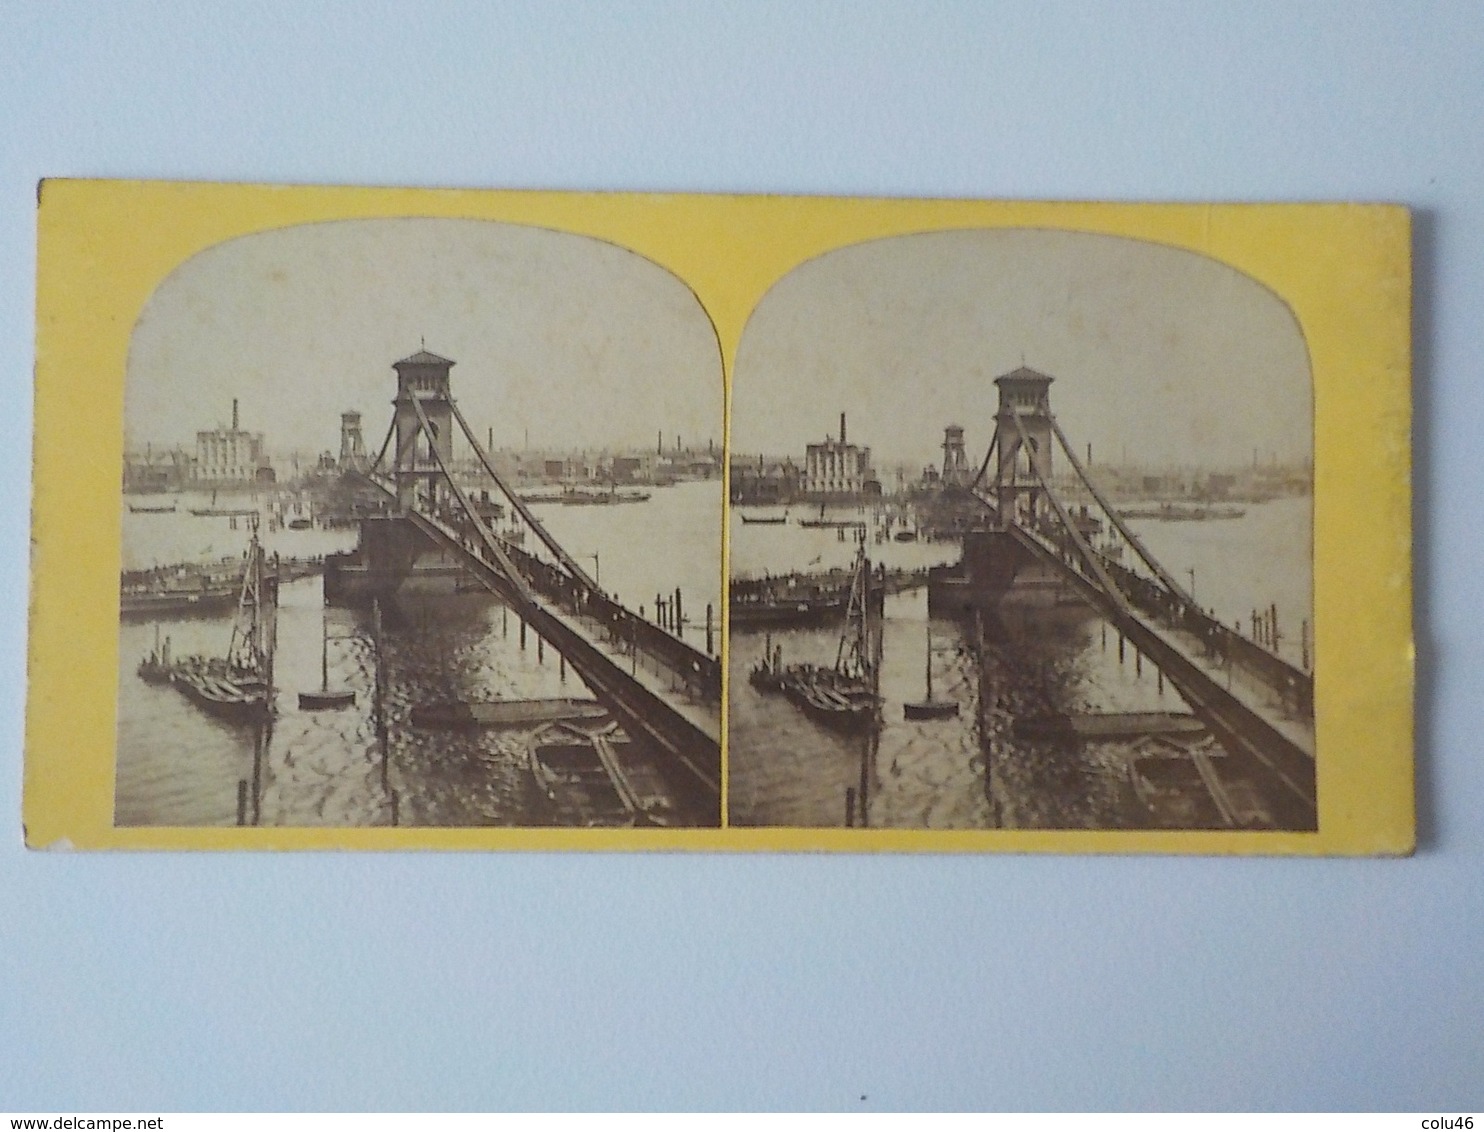 1900 Photo Stéréoscopique Instantaneous Views Of London N° 114 Tower Bridge Personnes Sur Le Pont - Photos Stéréoscopiques